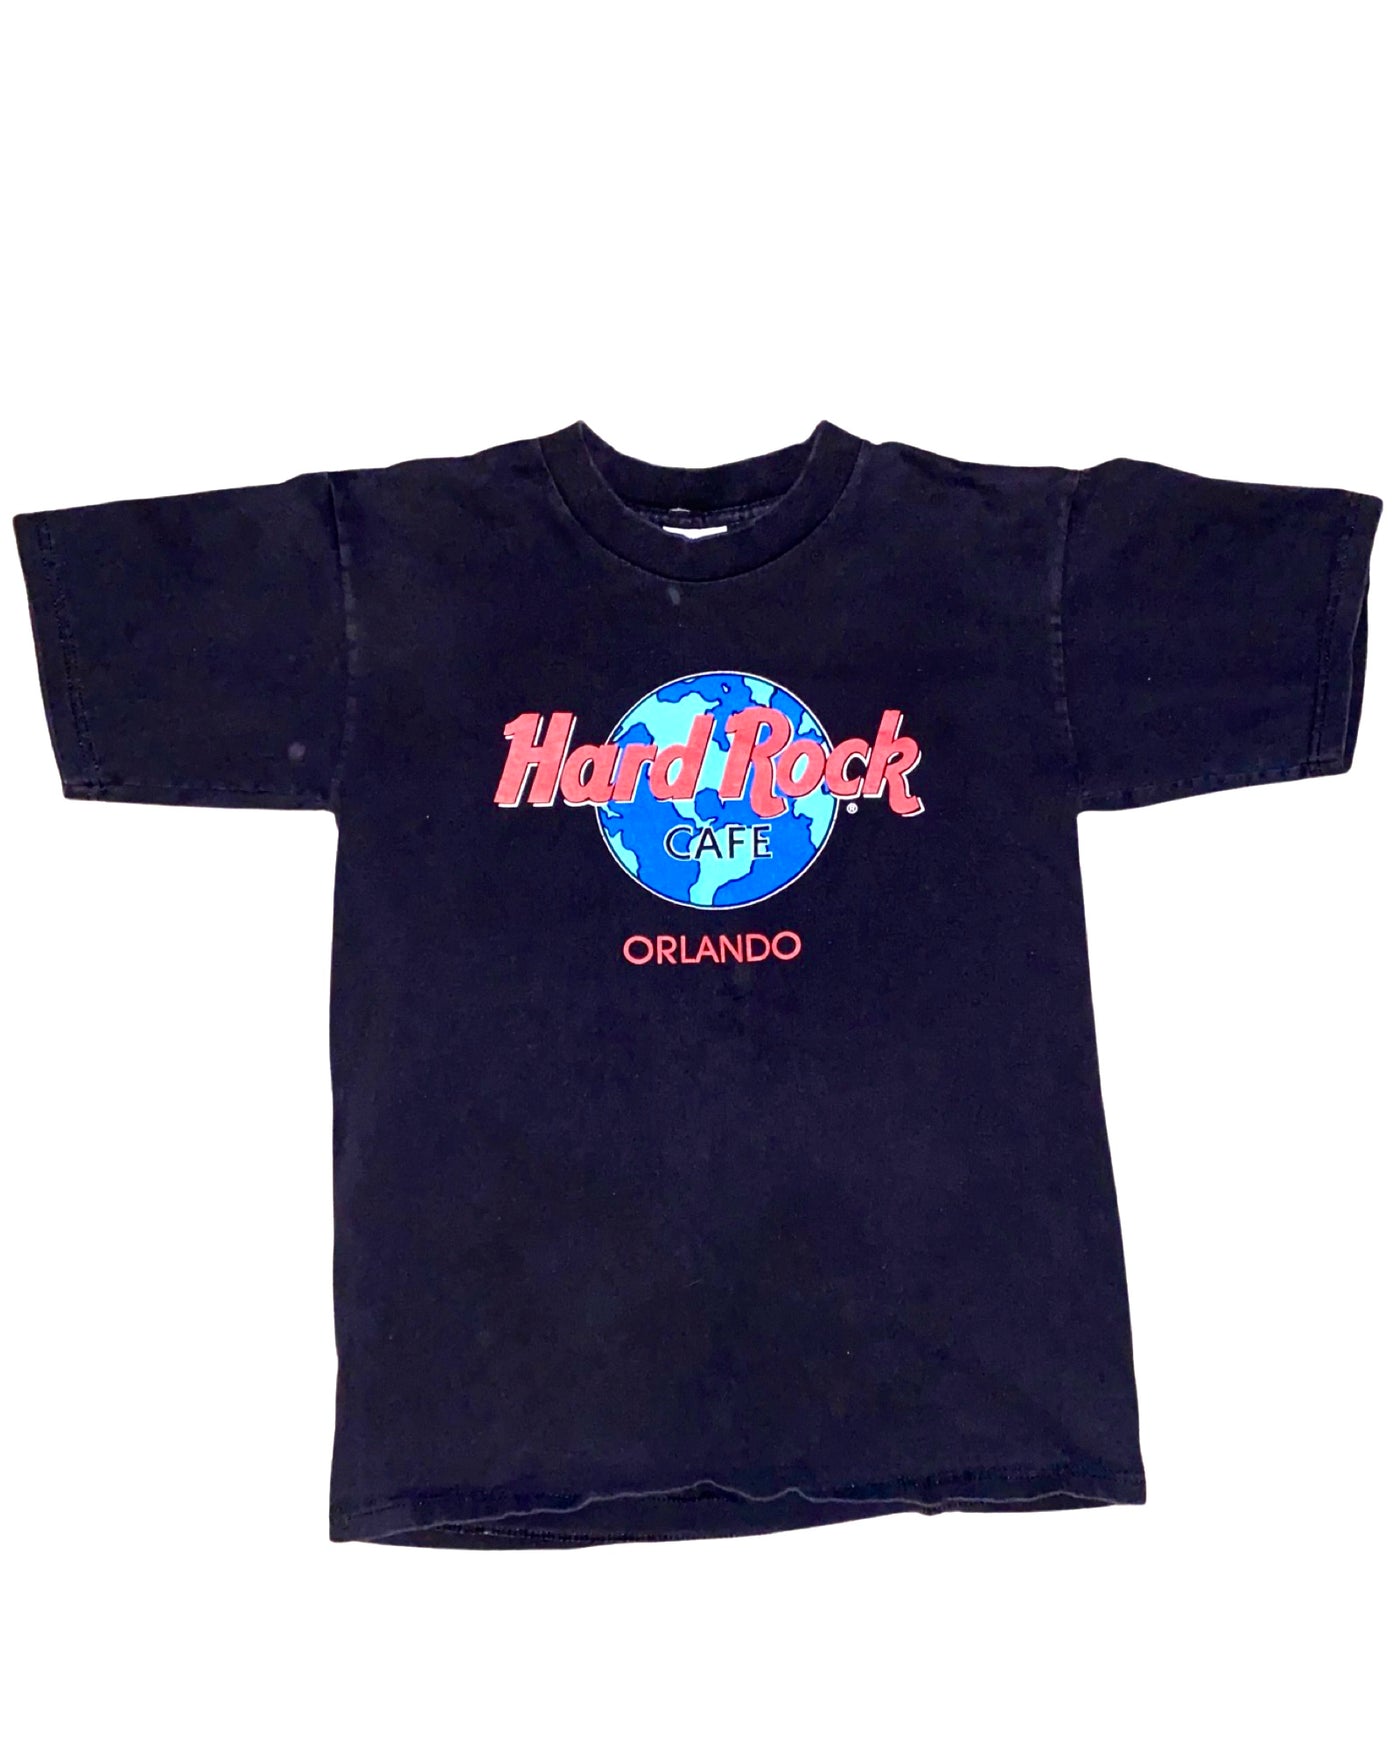 Vintage Hard Rock Cafe Orlando T-Shirt